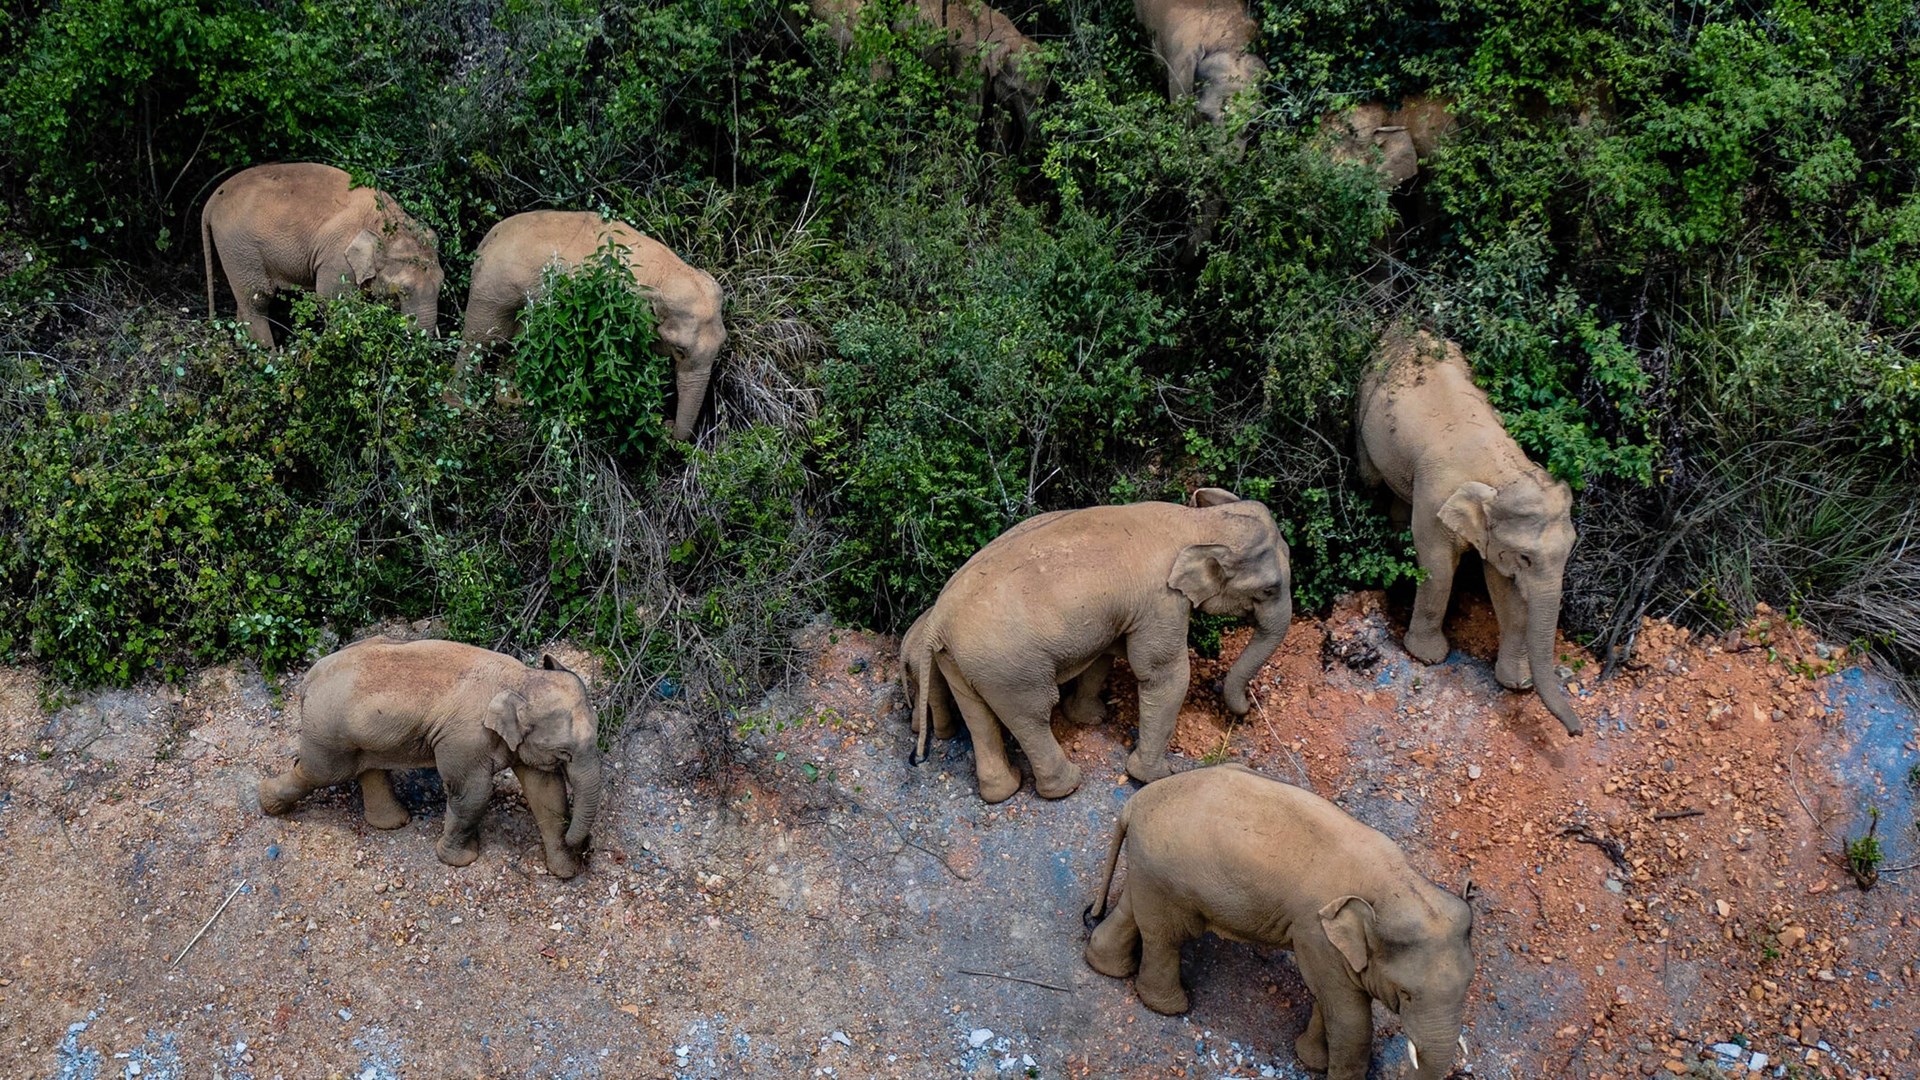 Κίνα: Με τείχος φορτηγών σταματούν την επέλαση των ελεφάντων – Τι προκάλεσε το επικό ταξίδι τους